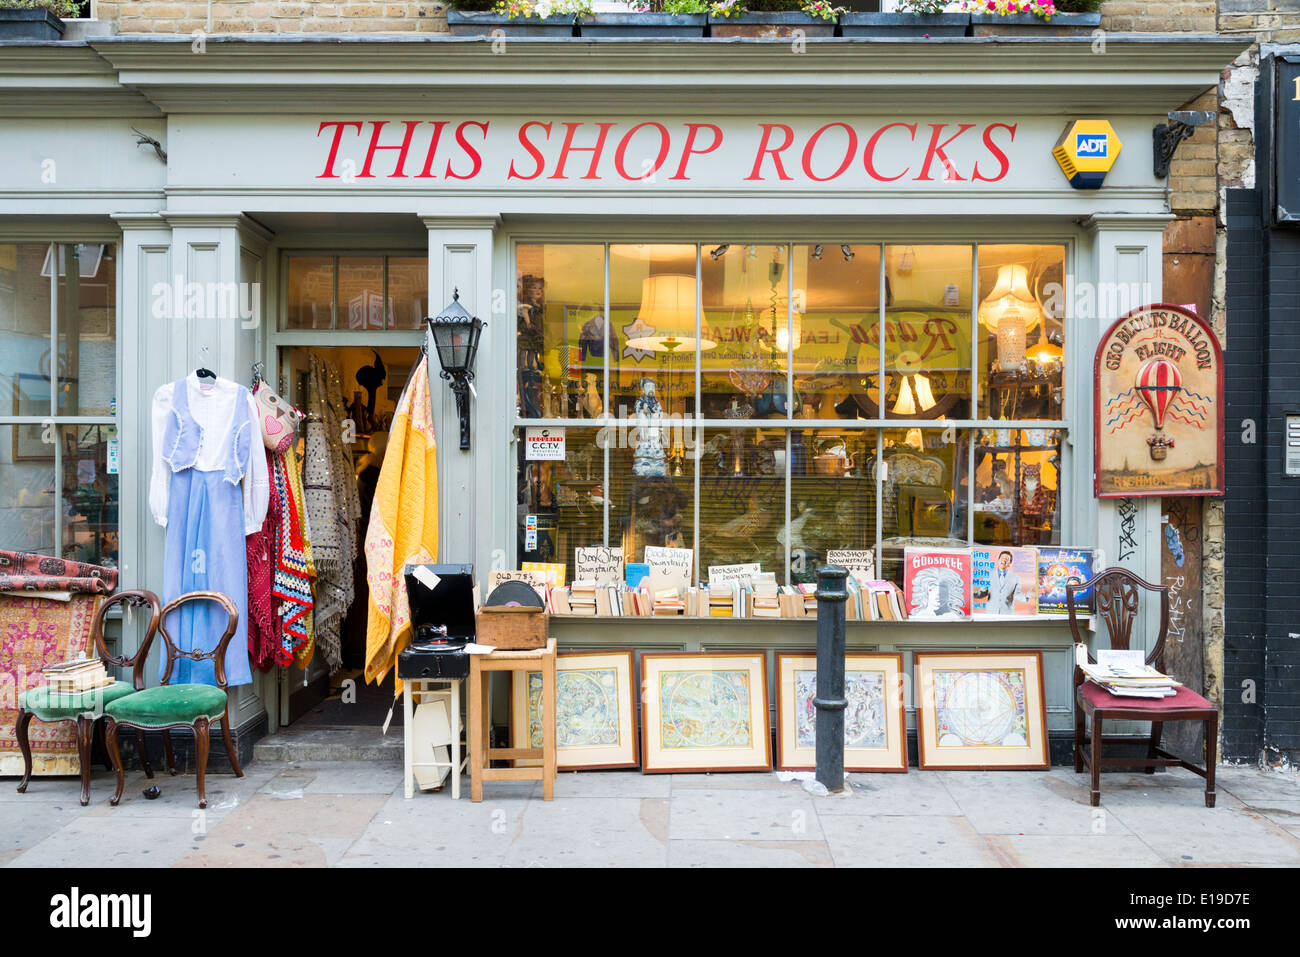 Cette boutique Rocks shopfront sur Brick Lane, Tower Hamlets, London, England, UK Banque D'Images